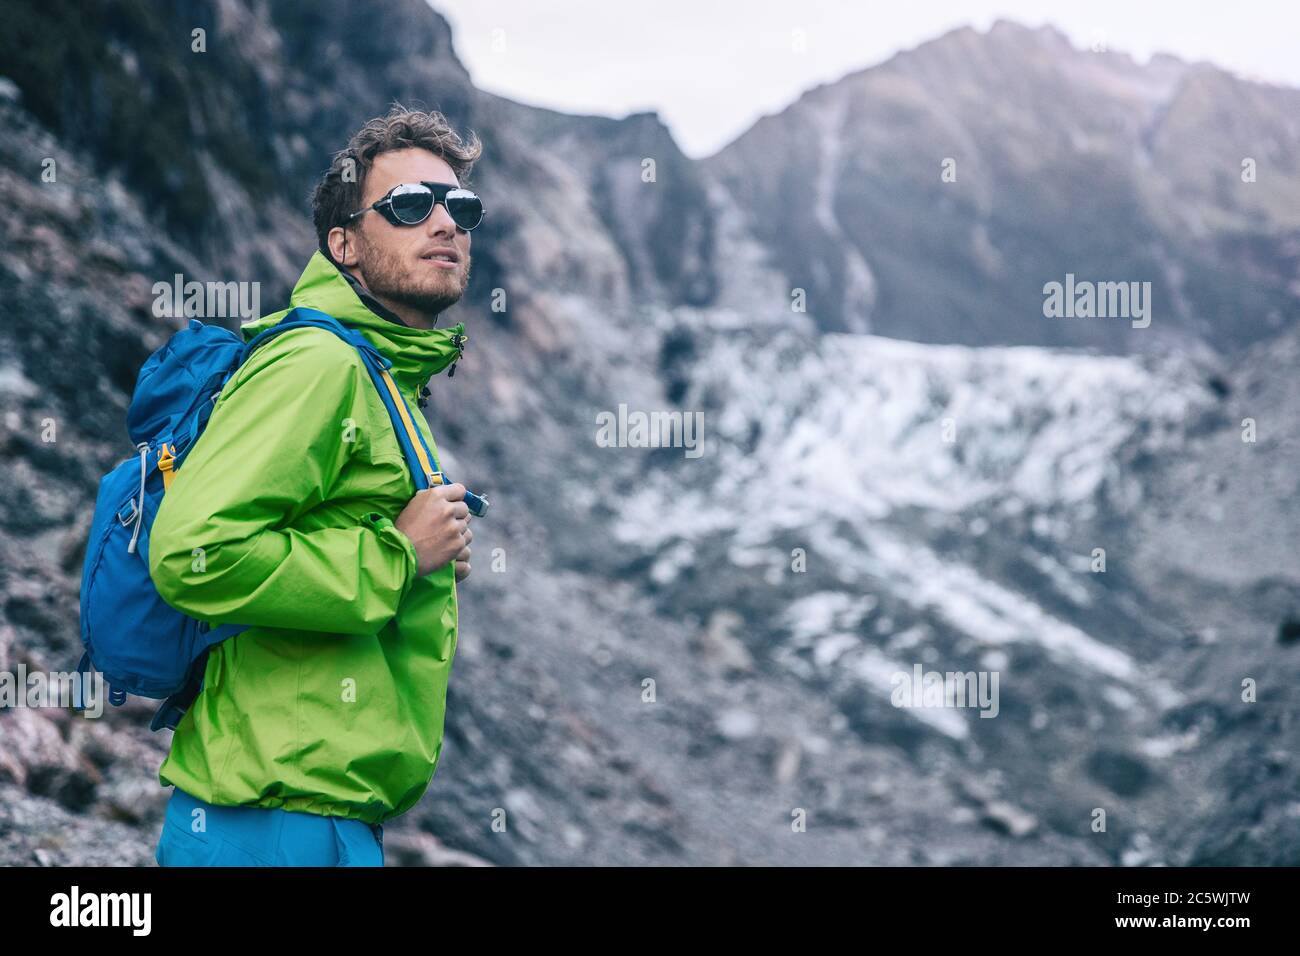 Avventura di viaggio in Nuova Zelanda. esploratore turistico backpacking nel paesaggio naturale di Franz Josef Glacier, Westland Tai Poutini National Park, Sud Foto Stock